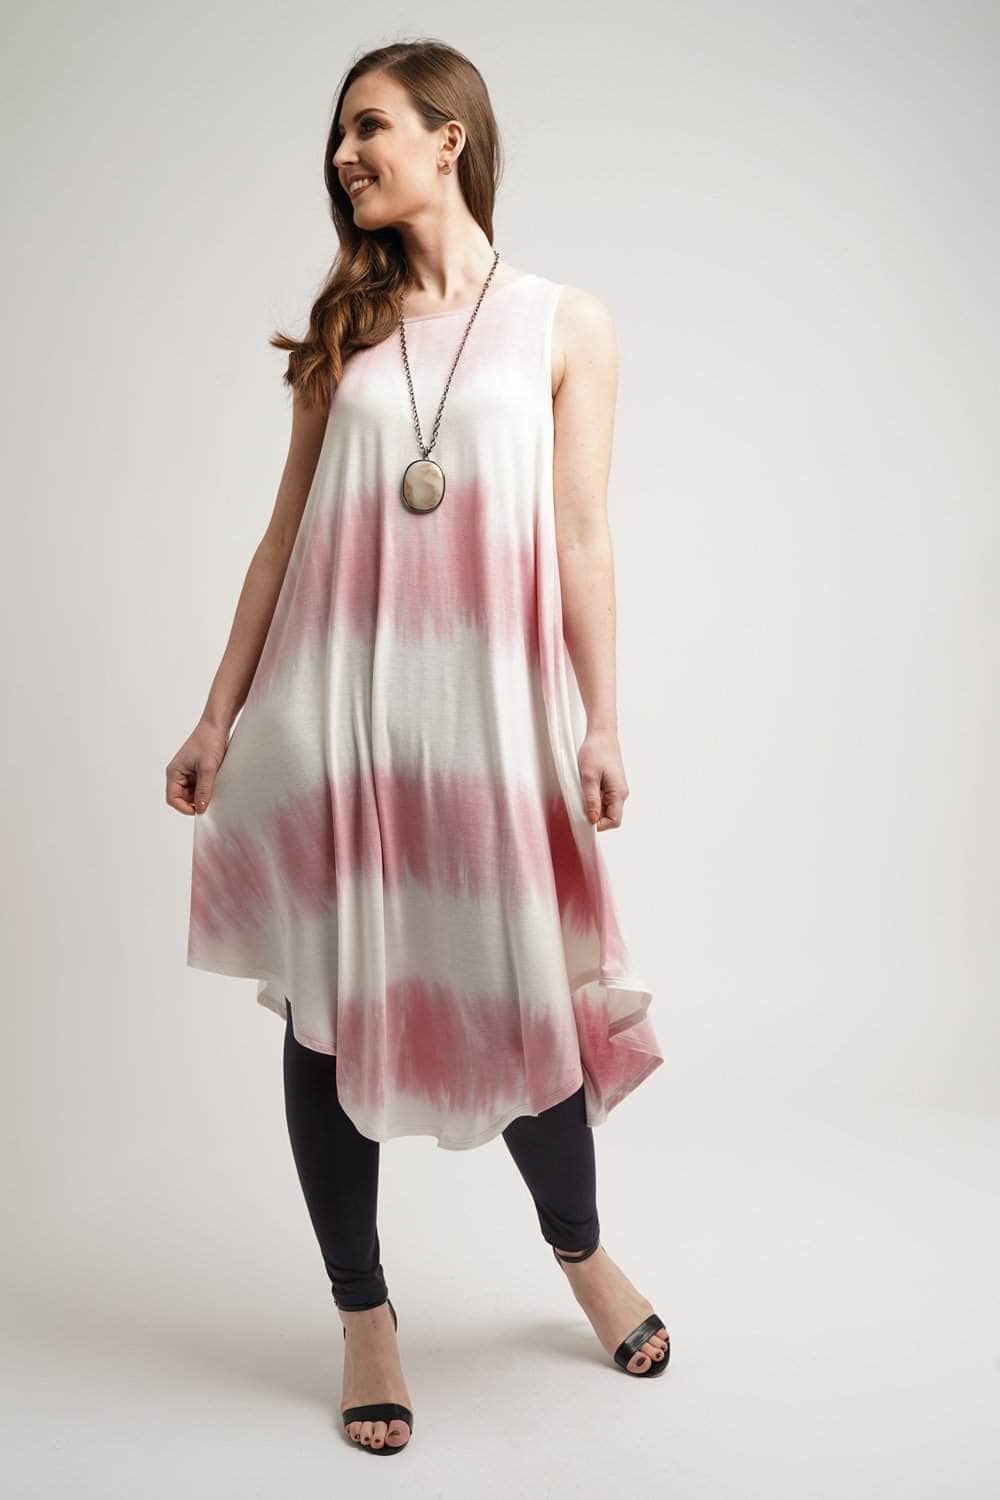 Saloos Dress 12 Sleeveless Tie-Dye Midi-Dress with Necklace